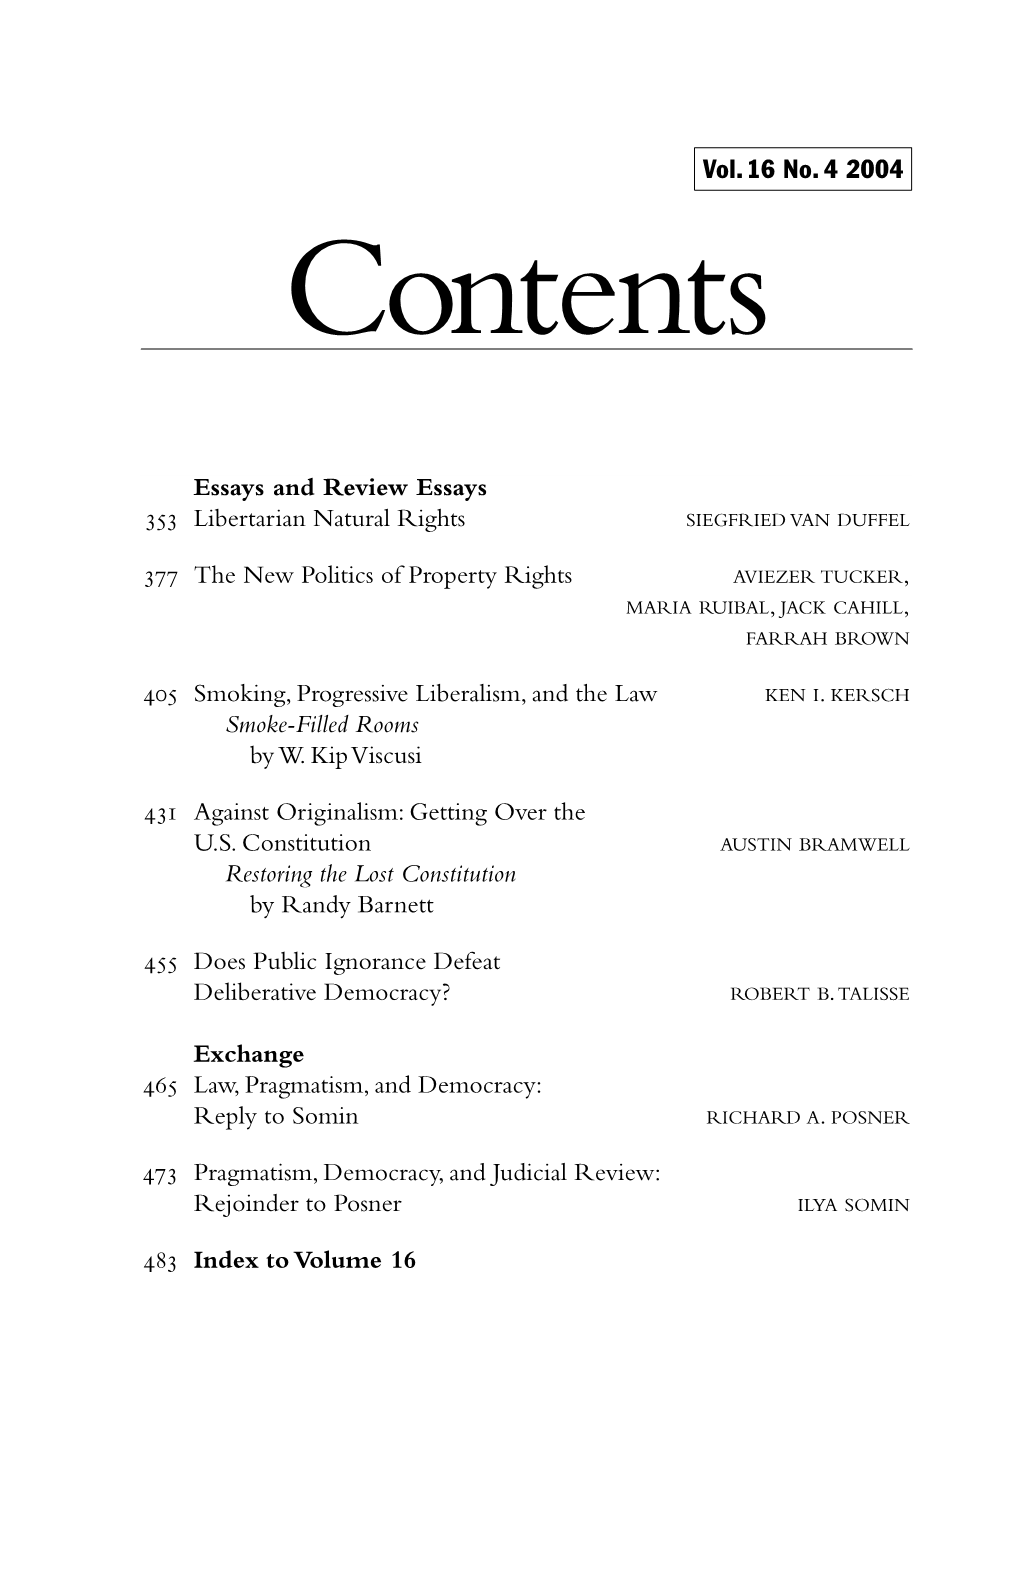 Vol 16, No 4, Table of Contents, Notices